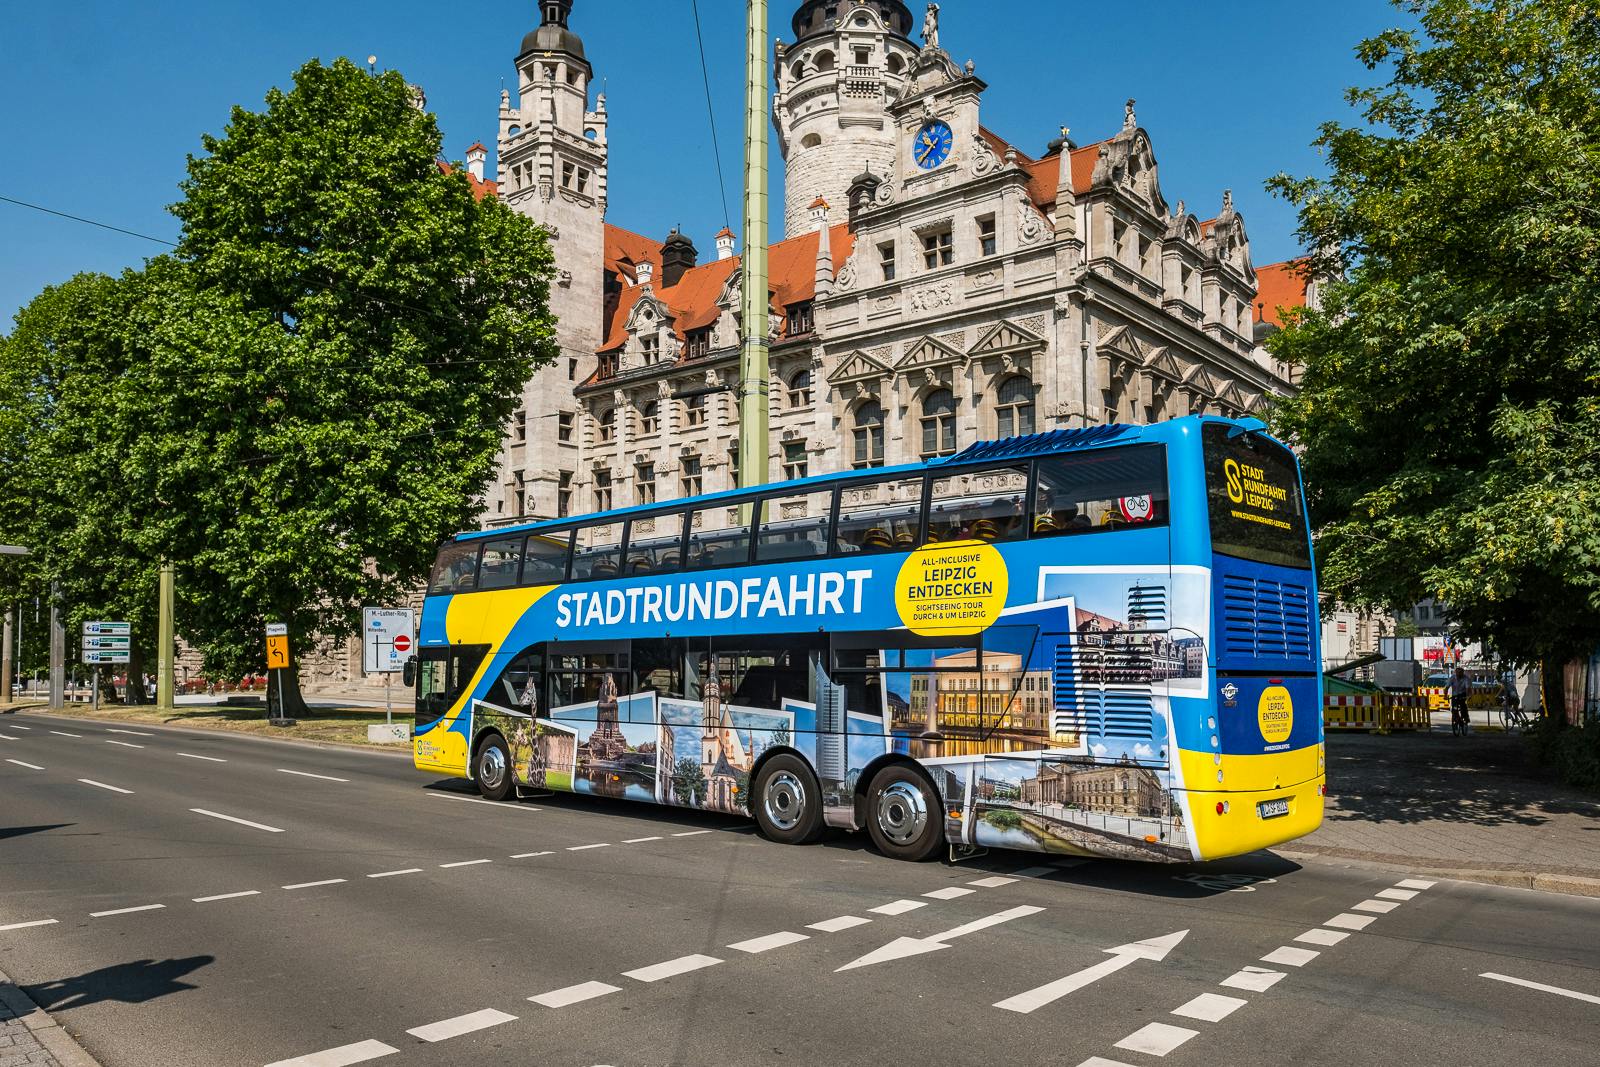 Wycieczka po dużym mieście w Lipsku z autobusem typu hop-on hop-off